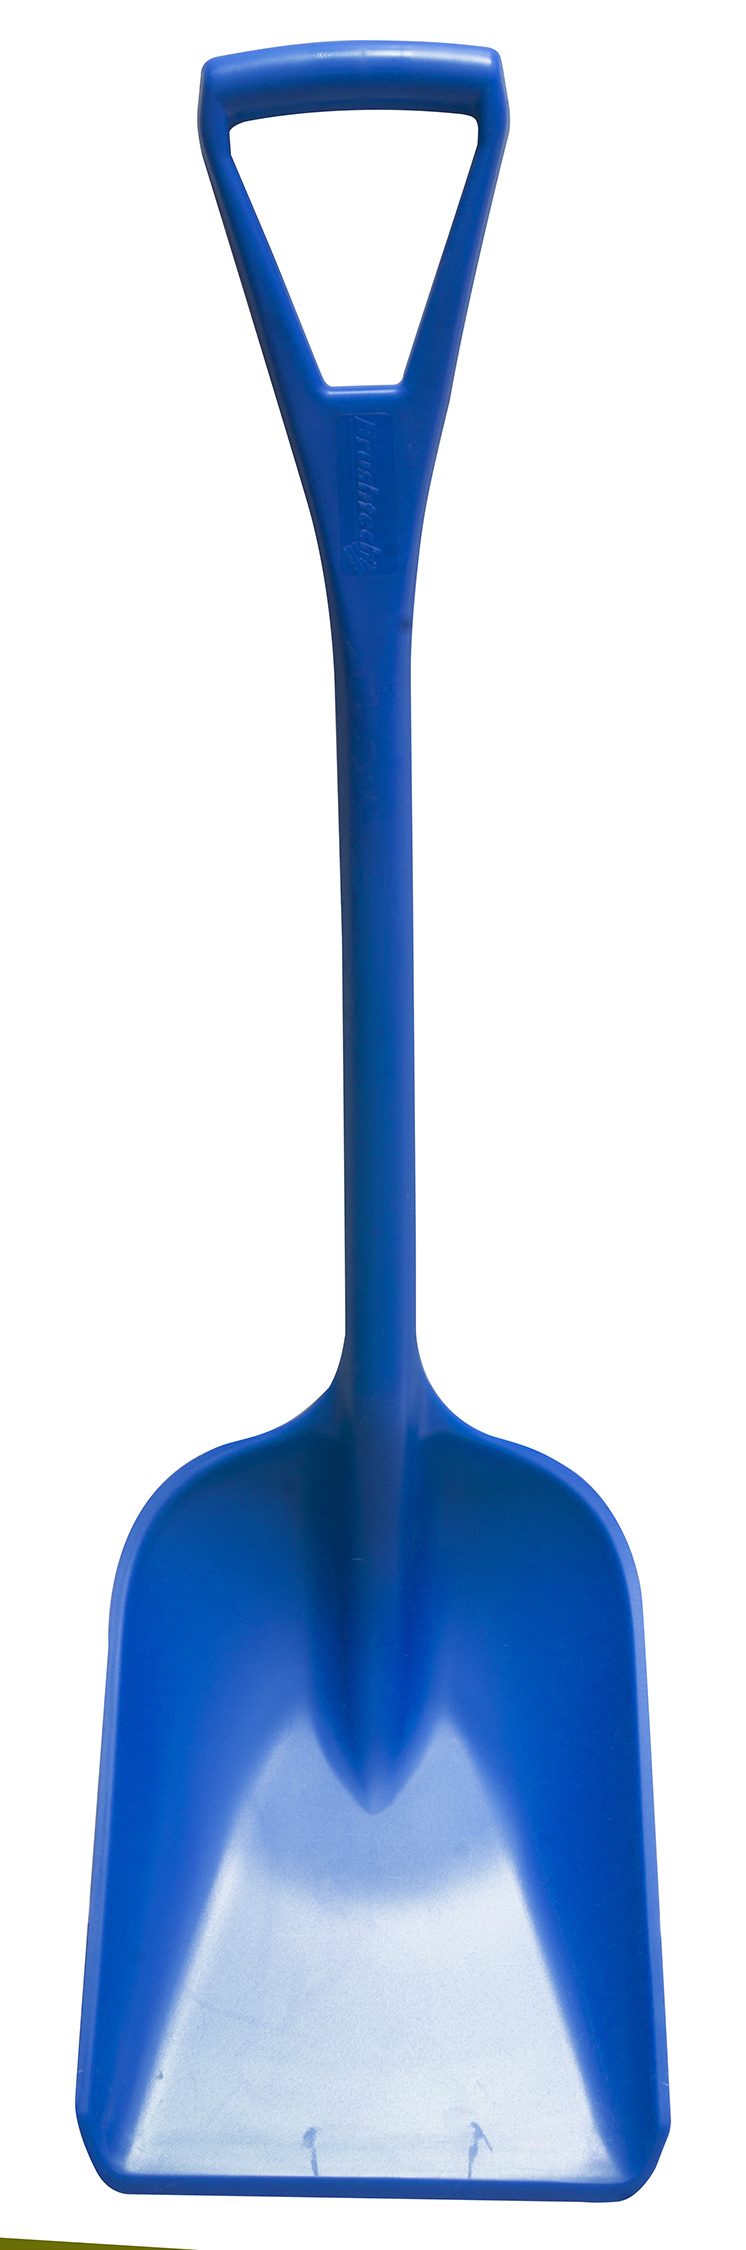 Лопата HACCPER малая, 920х260 мм, синяя